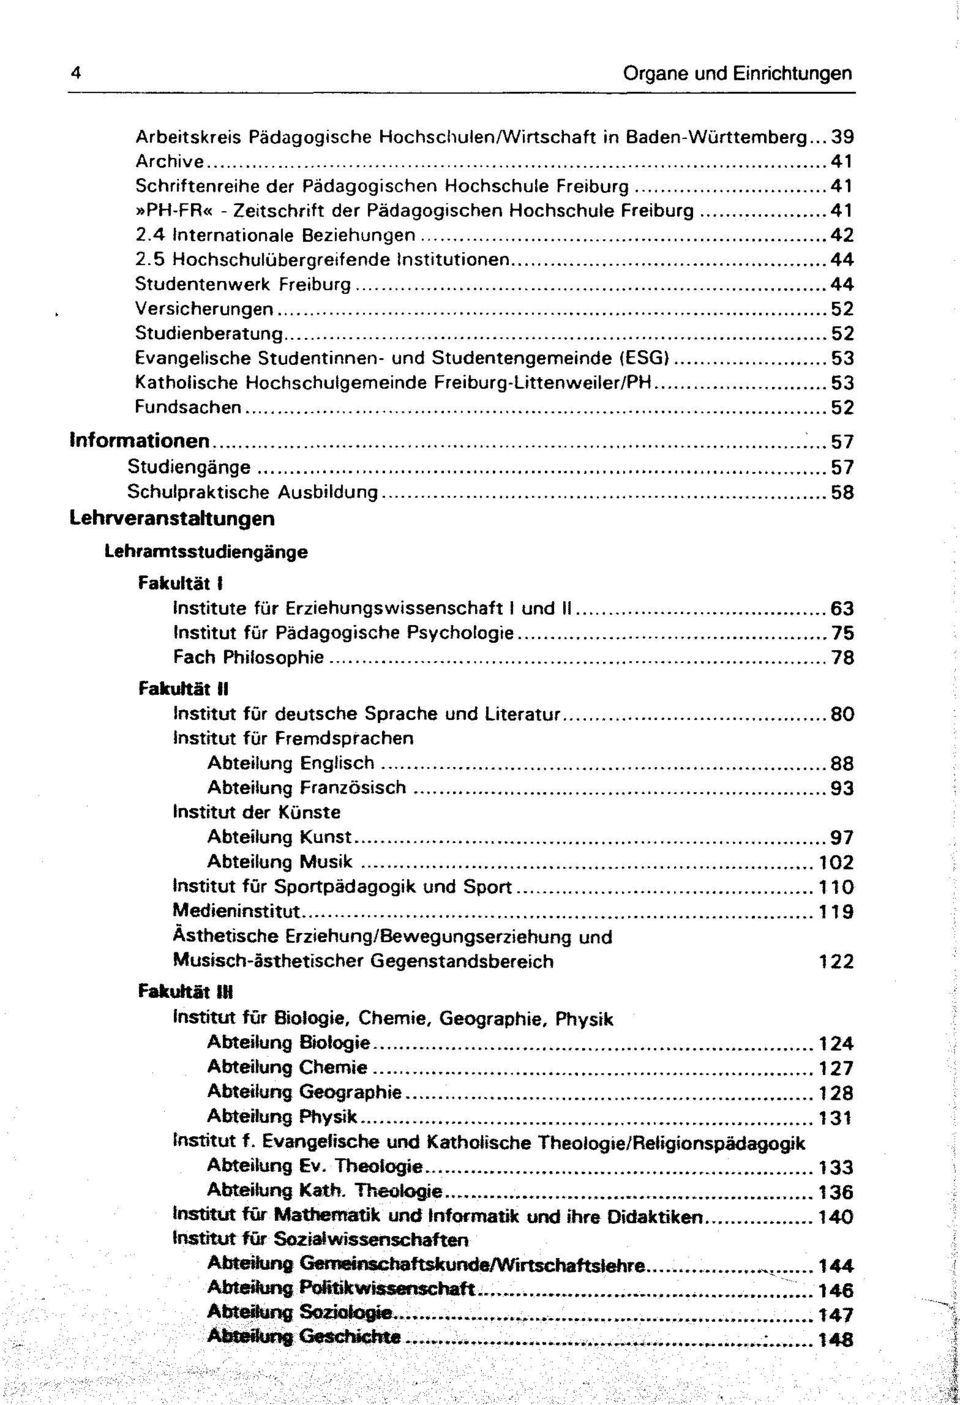 .. 52 Studienberatung... 52 Evangelische Studentinnen- und Studentengemeinde (ESG)... 53 Katholische Hochschulgemeinde Freiburg-Littenweiler/PH... 53 Fundsachen... 52 Informationen... 57 Studiengänge.